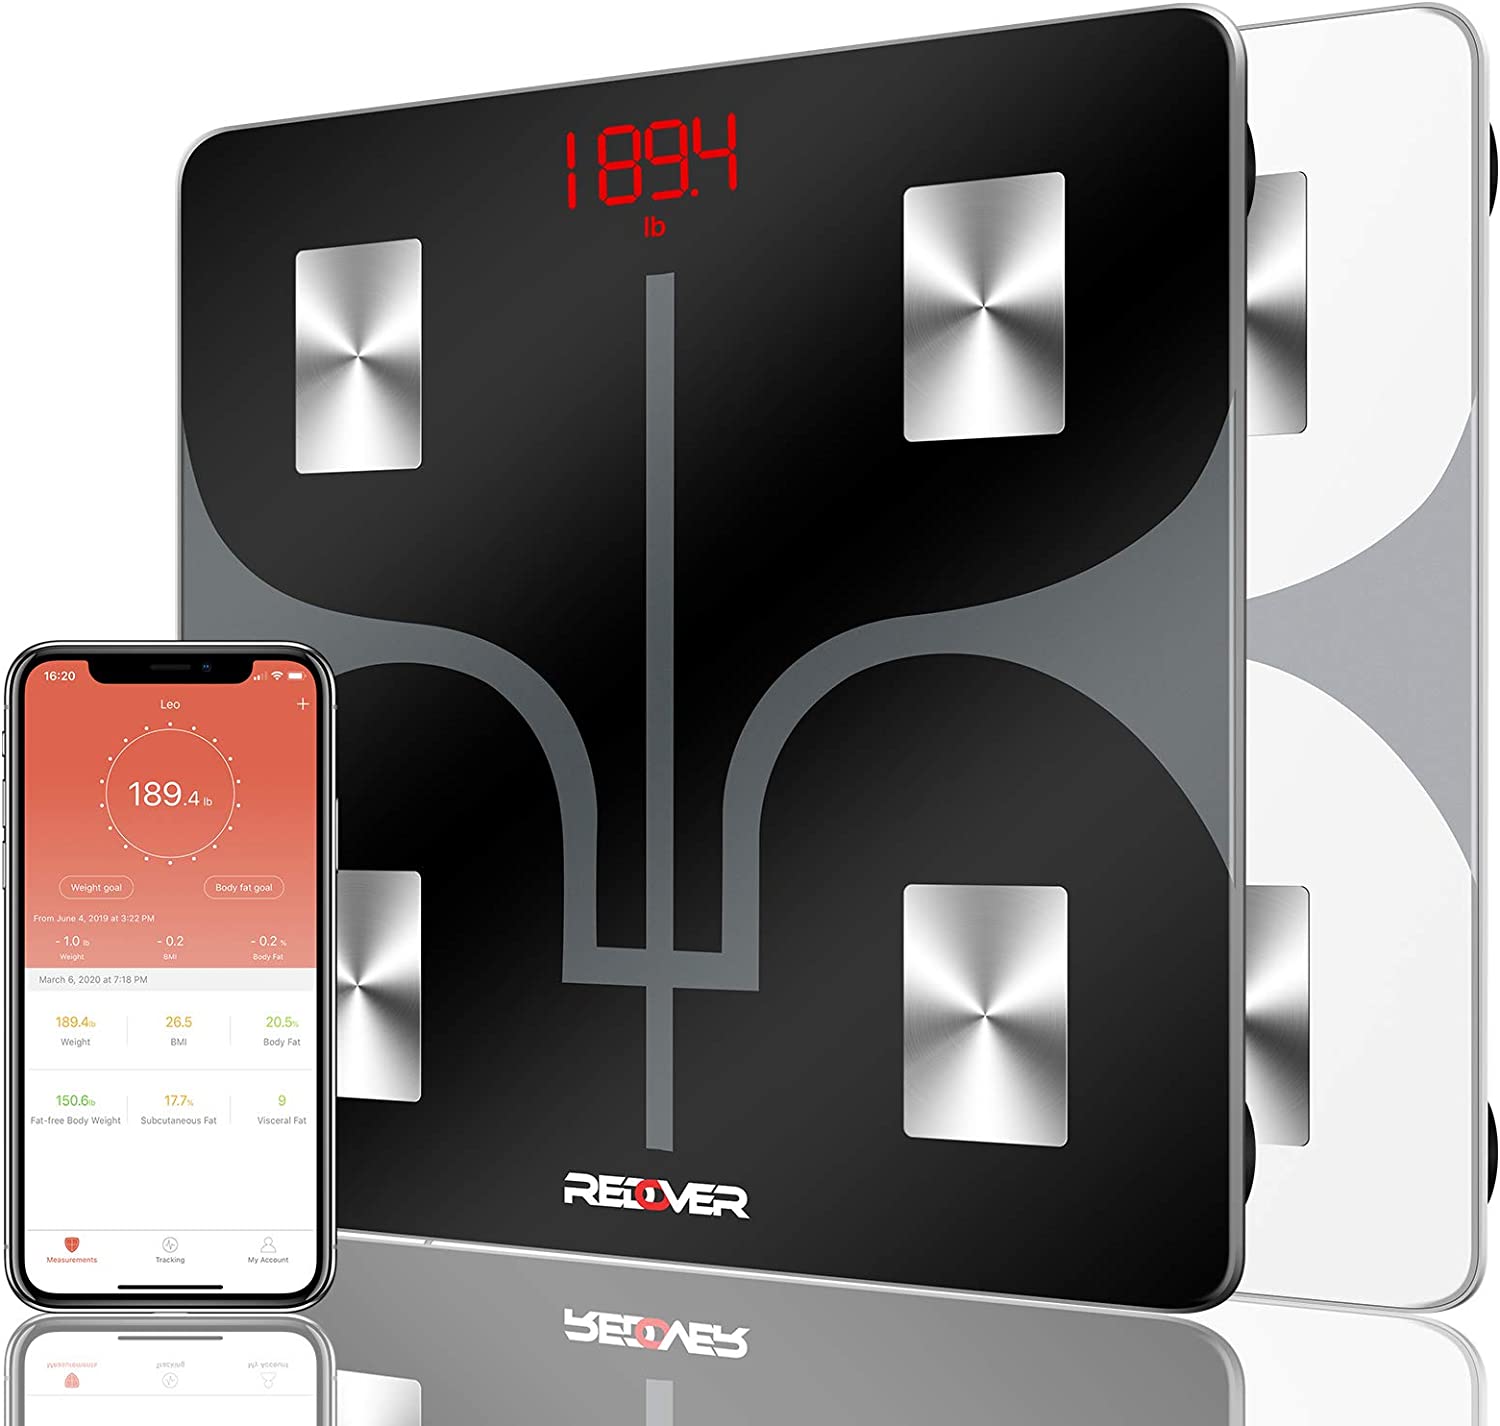 REDOVER Auto-Calibrating LED BMI Scale